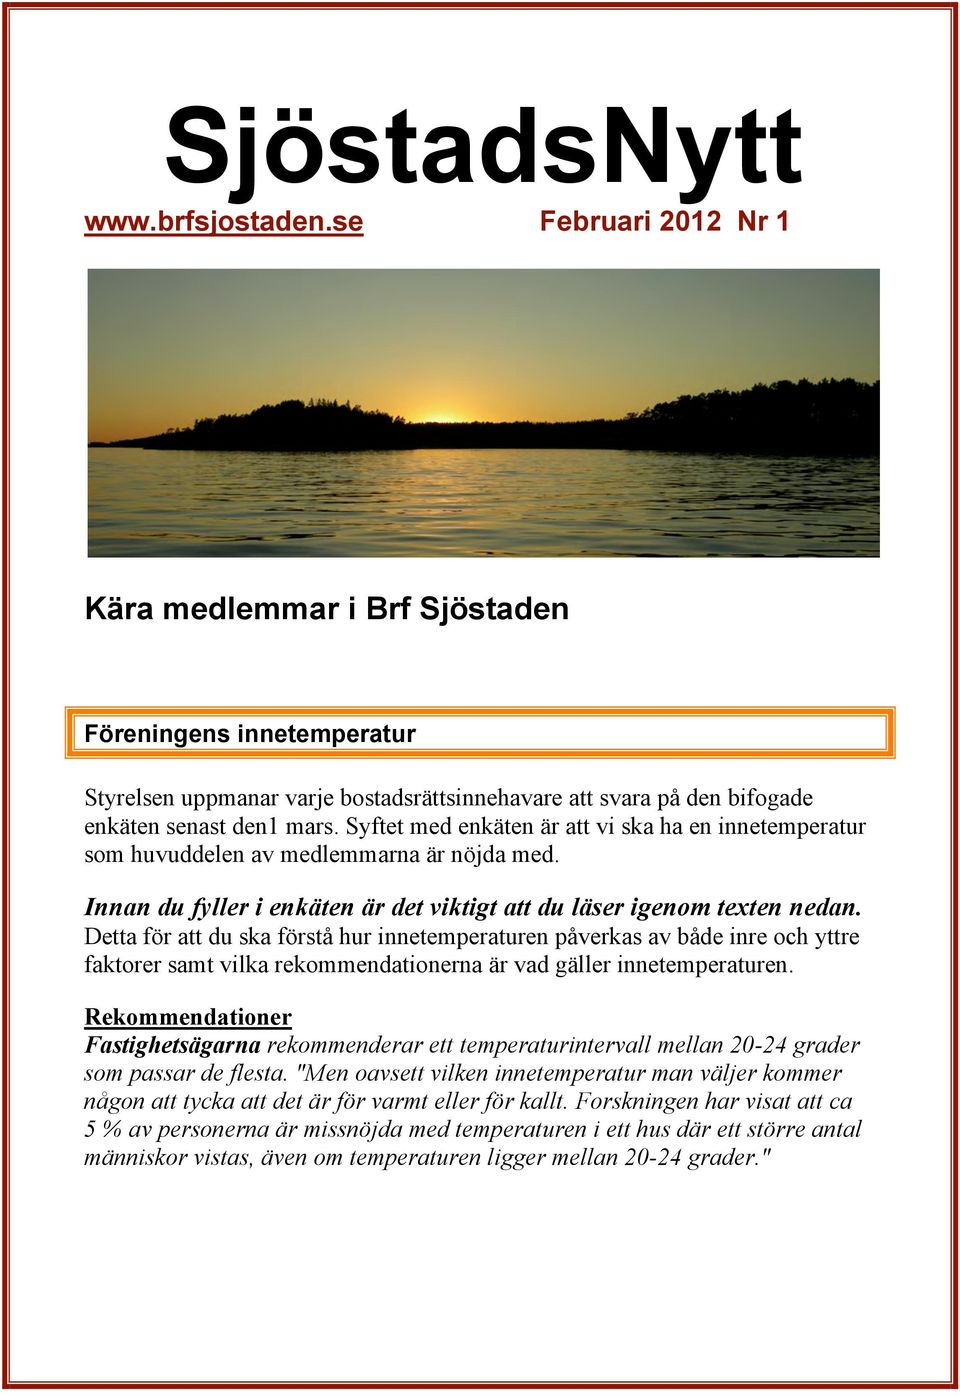 SjöstadsNytt Februari 2012 Nr 1 - PDF Gratis nedladdning